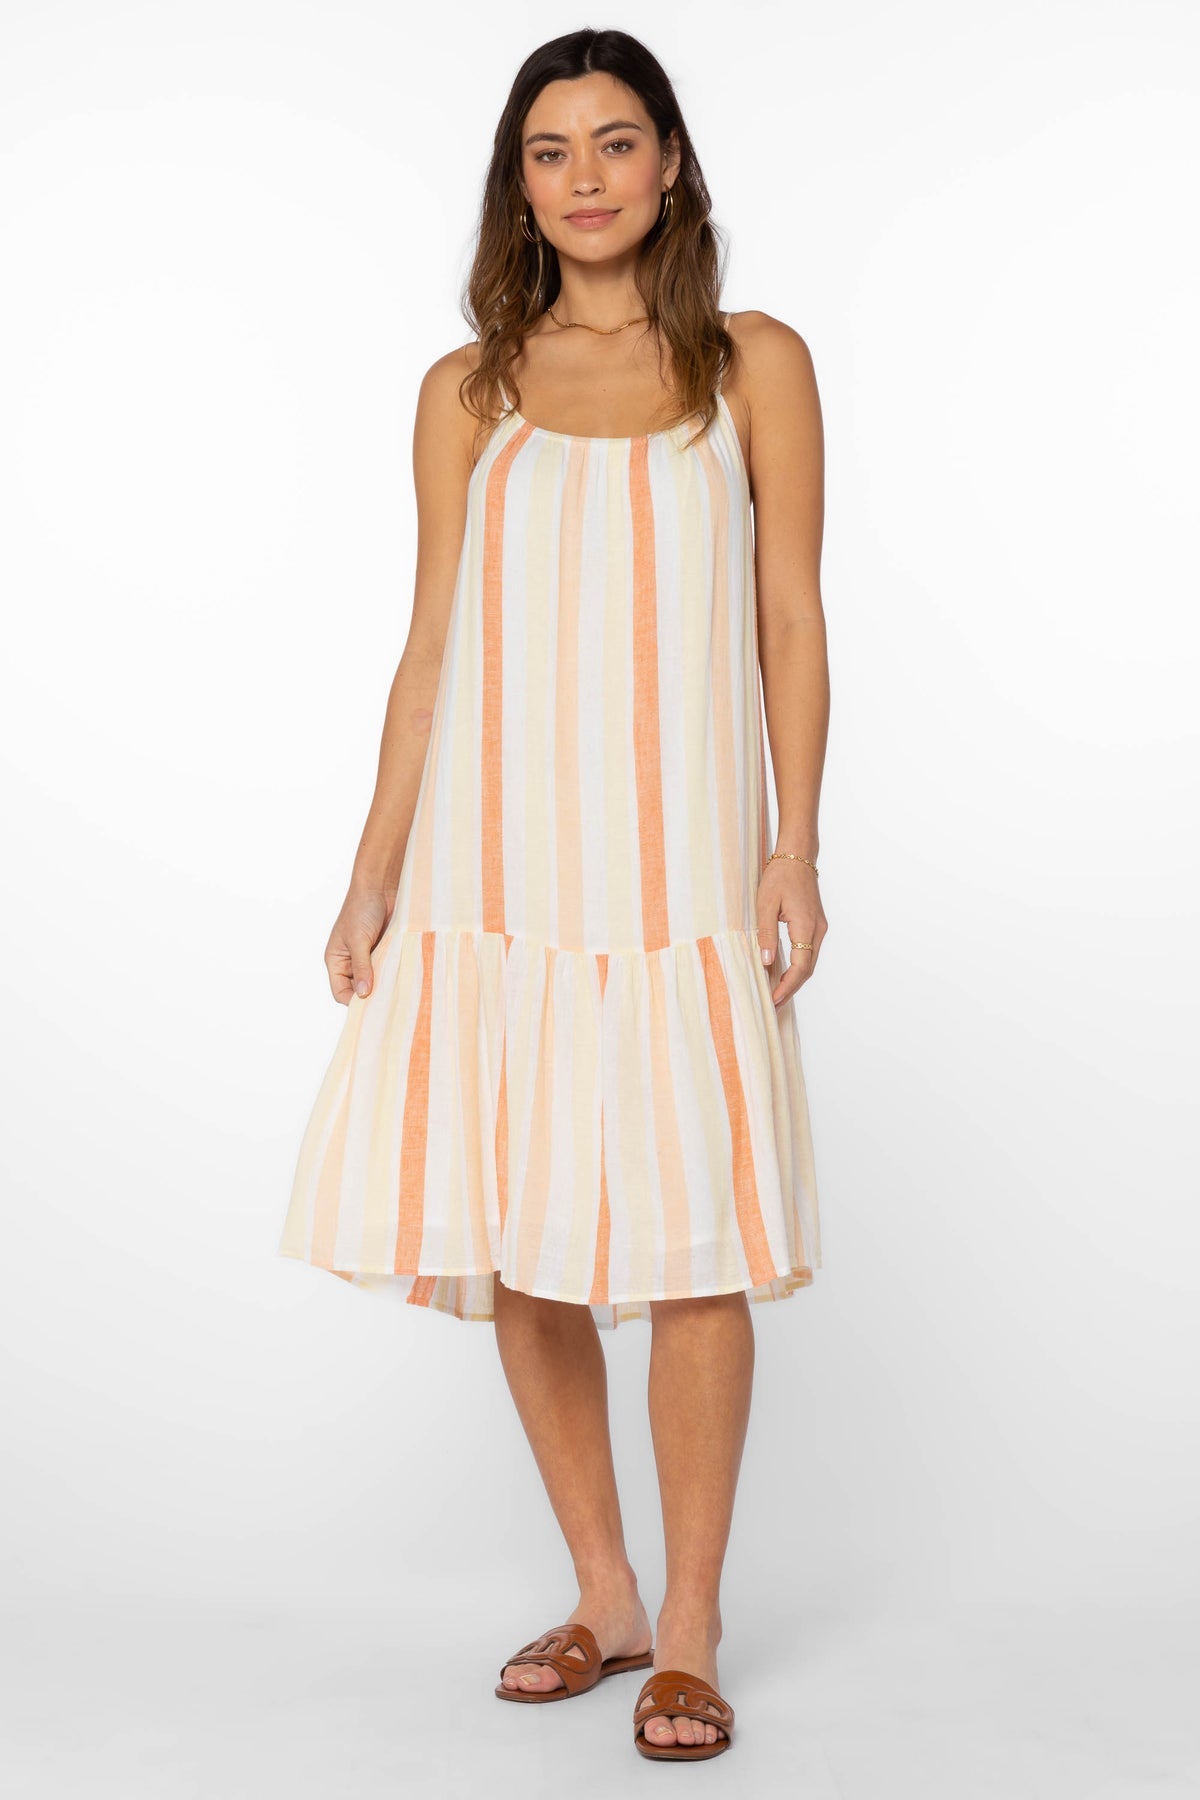 Velvet Heart Amelie Orange Stripe Dress